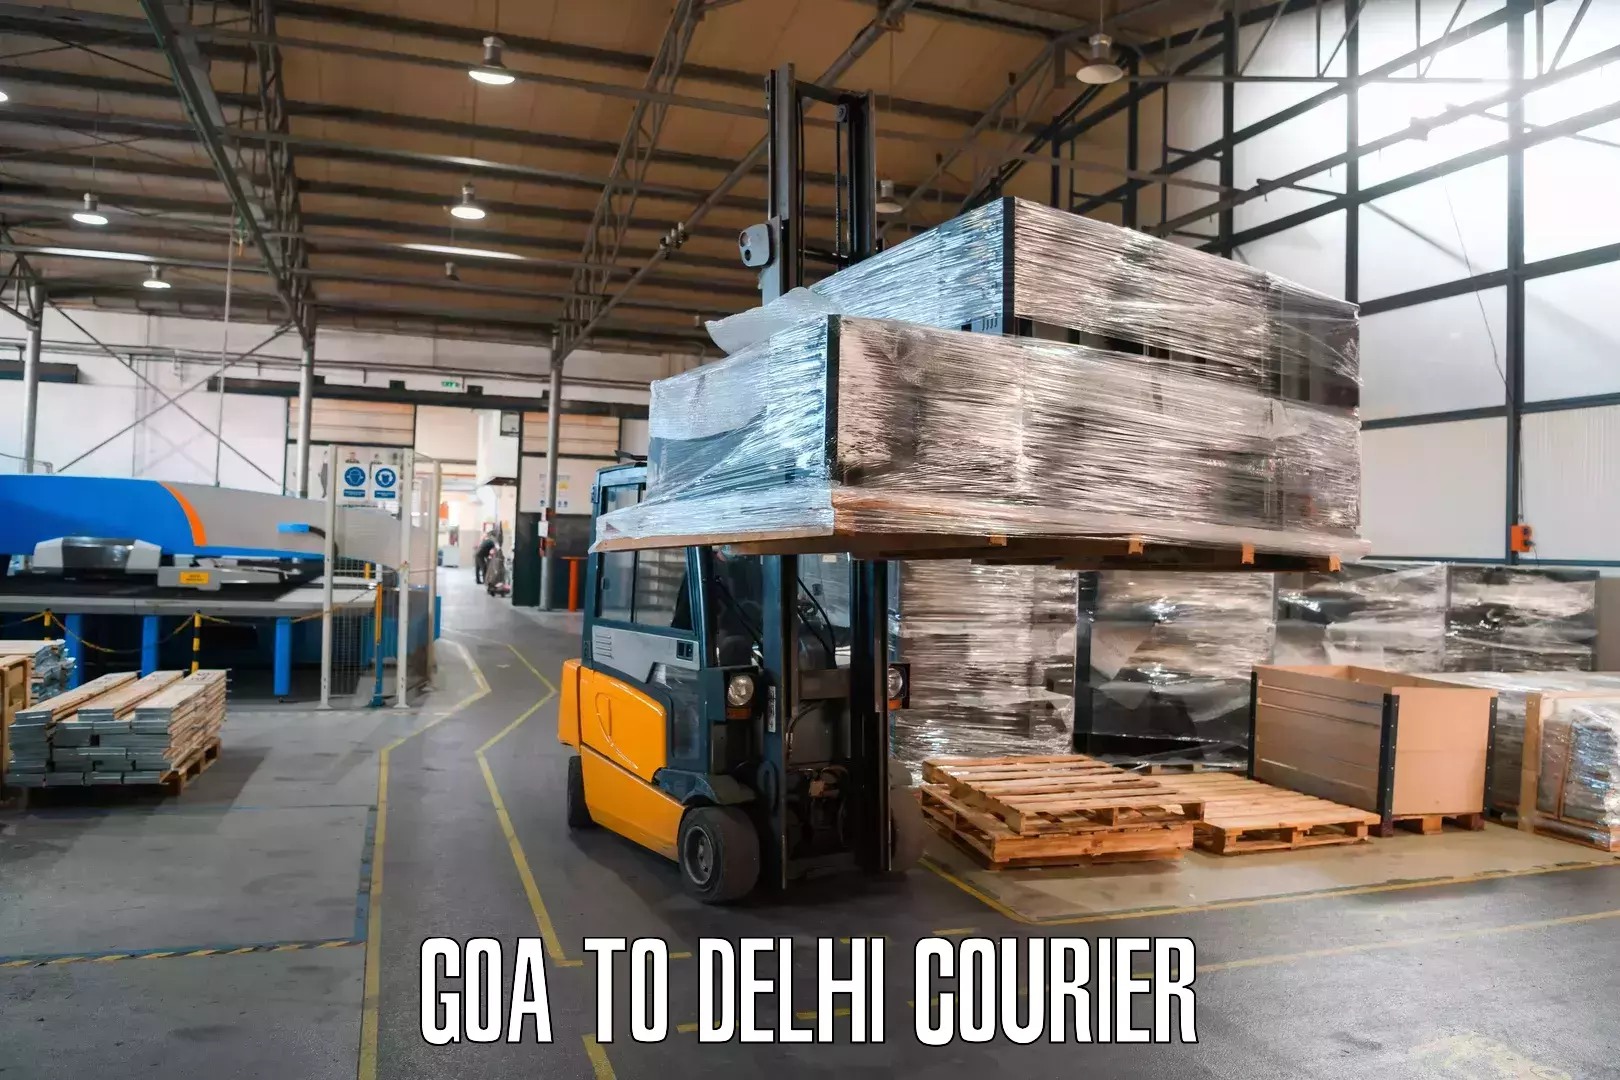 Speedy delivery service Goa to Delhi